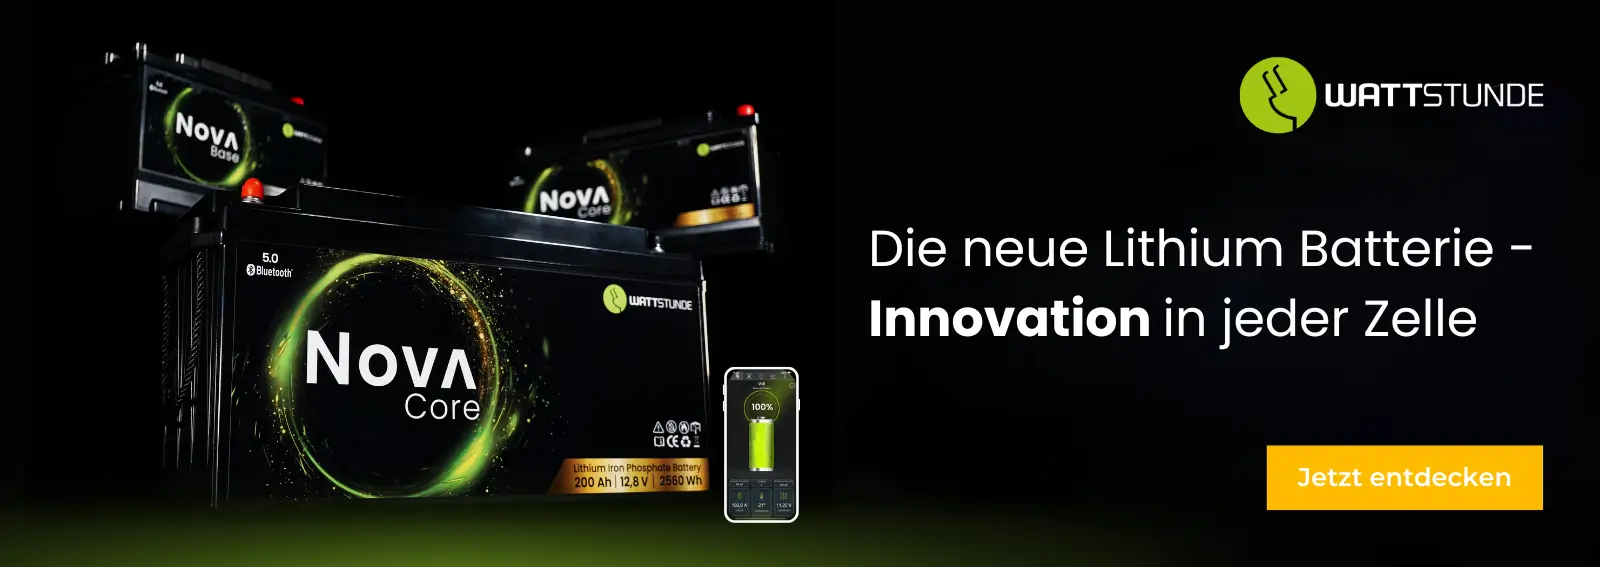 WATTSTUNDE | Nova Batterie Serie